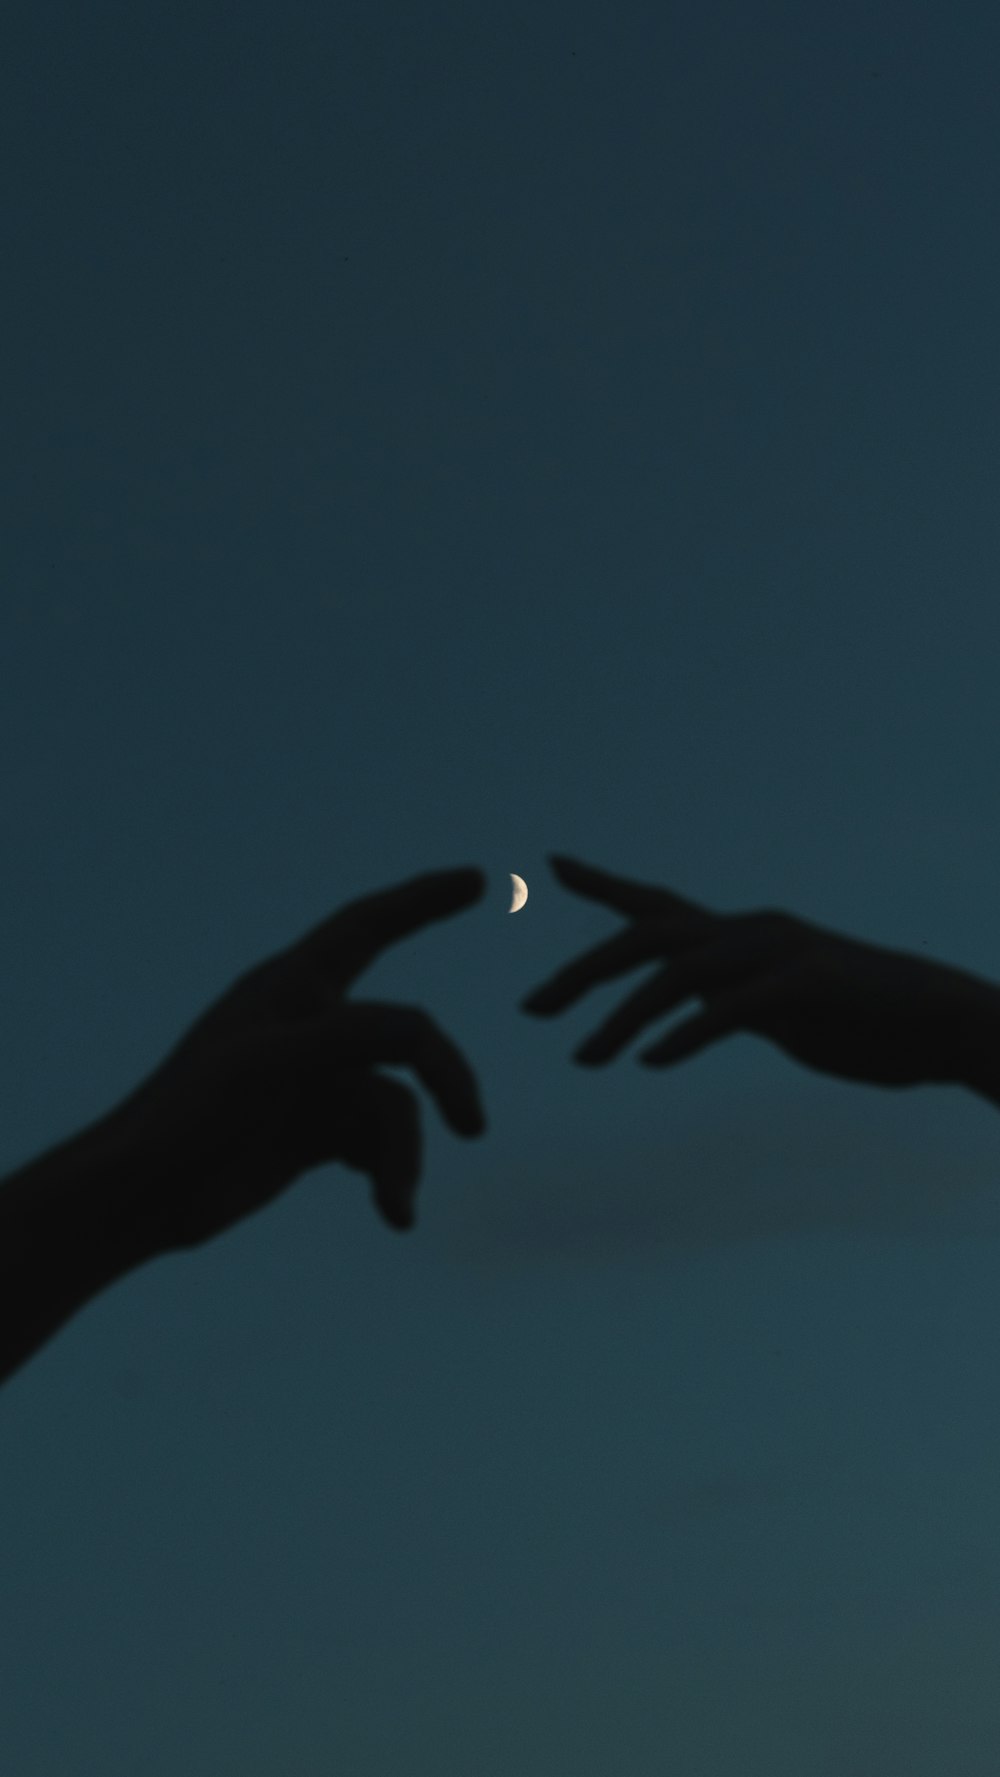 하늘의 달을 향해 손을 뻗고 있는 두 손